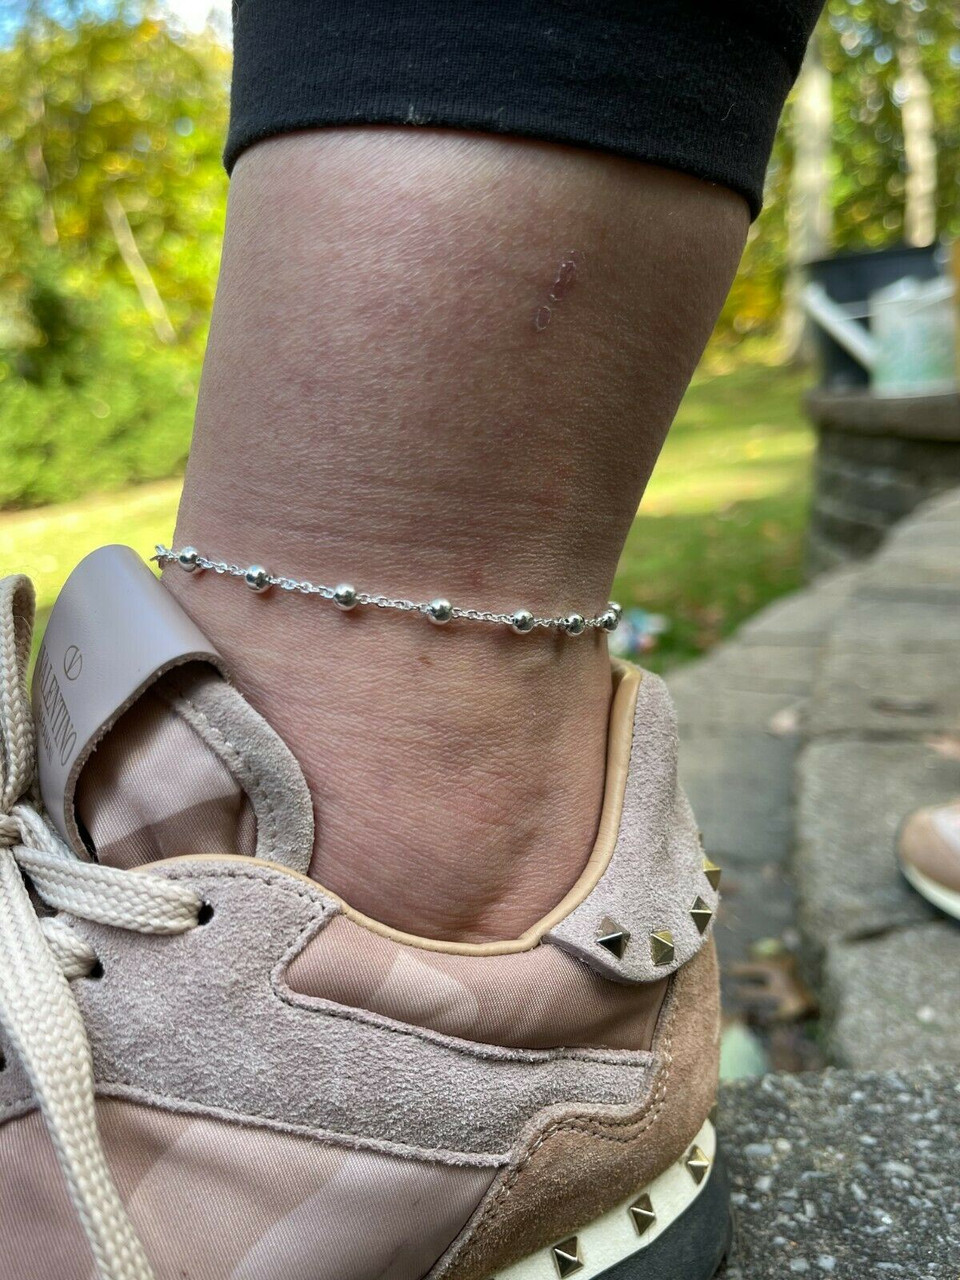 Copper Bracelet Anklet For Women 10.0 inches Adjustable Ankle Bracelet